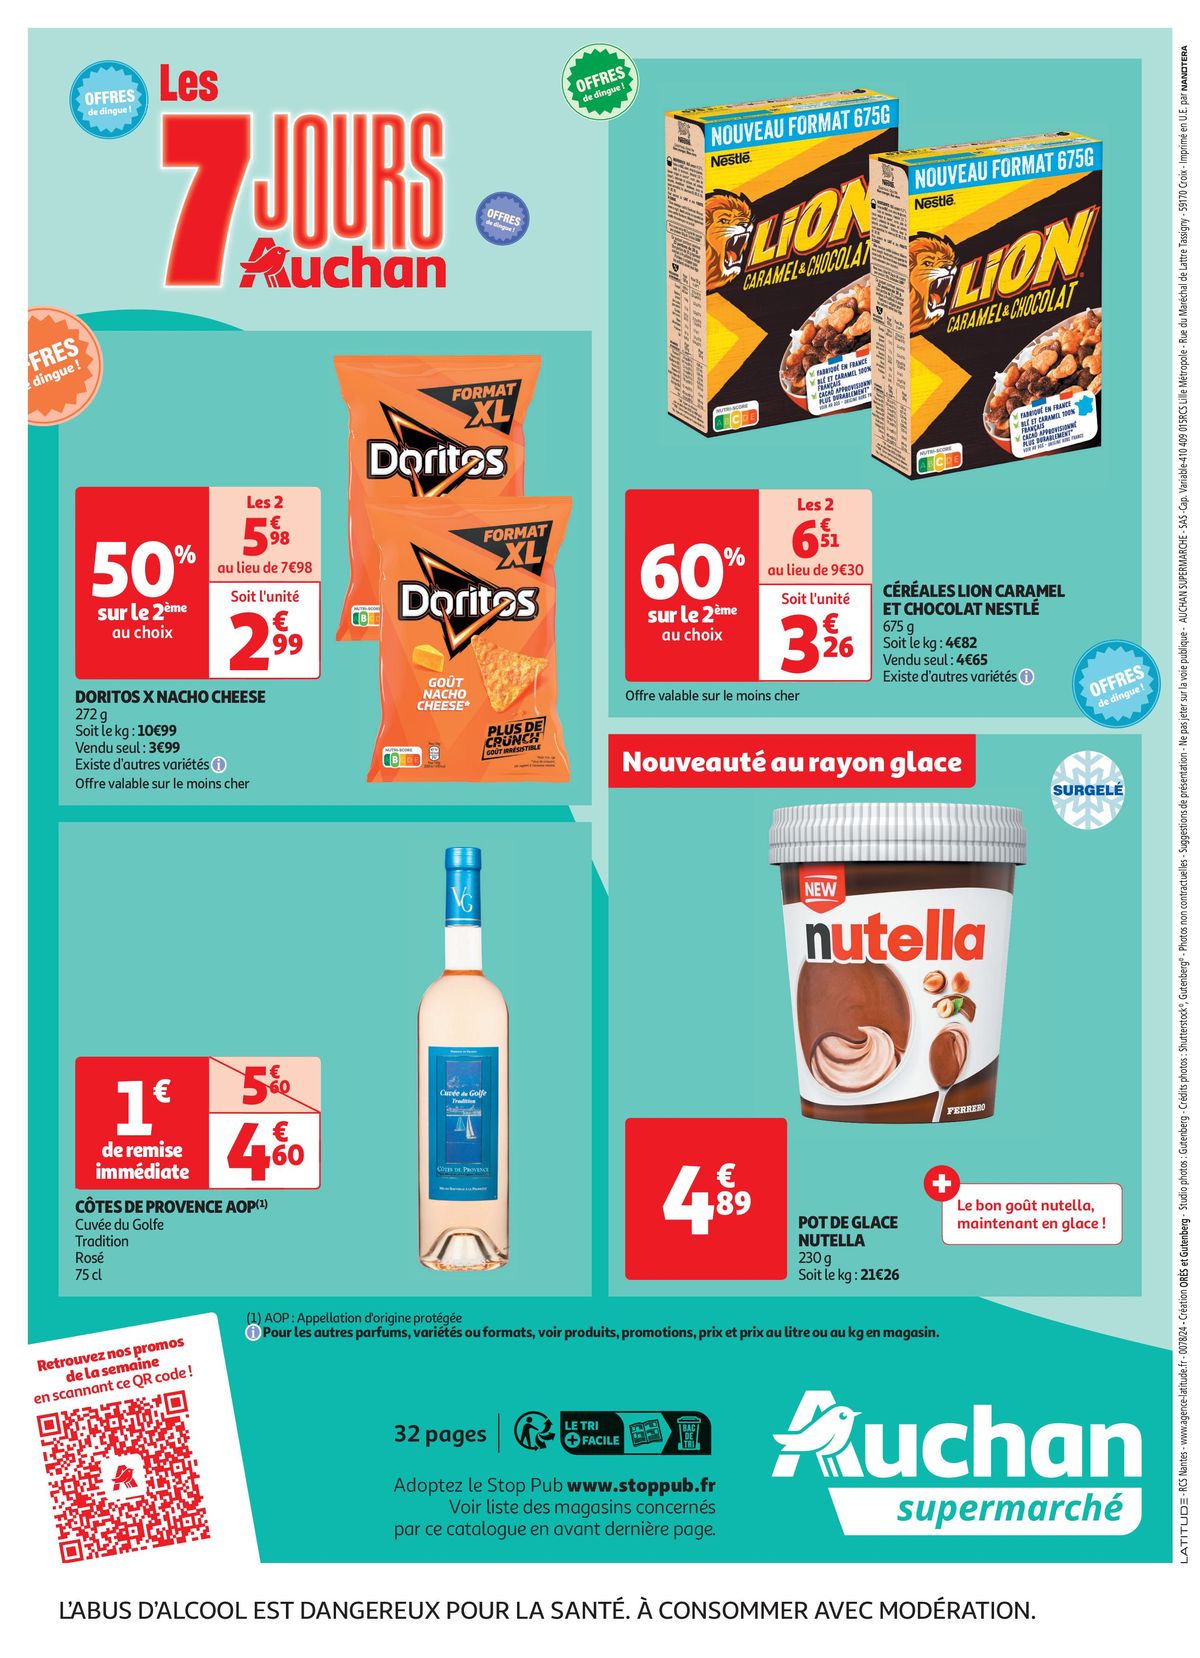 Catalogue C'est les 7 jours Auchan dans votre super !, page 00032